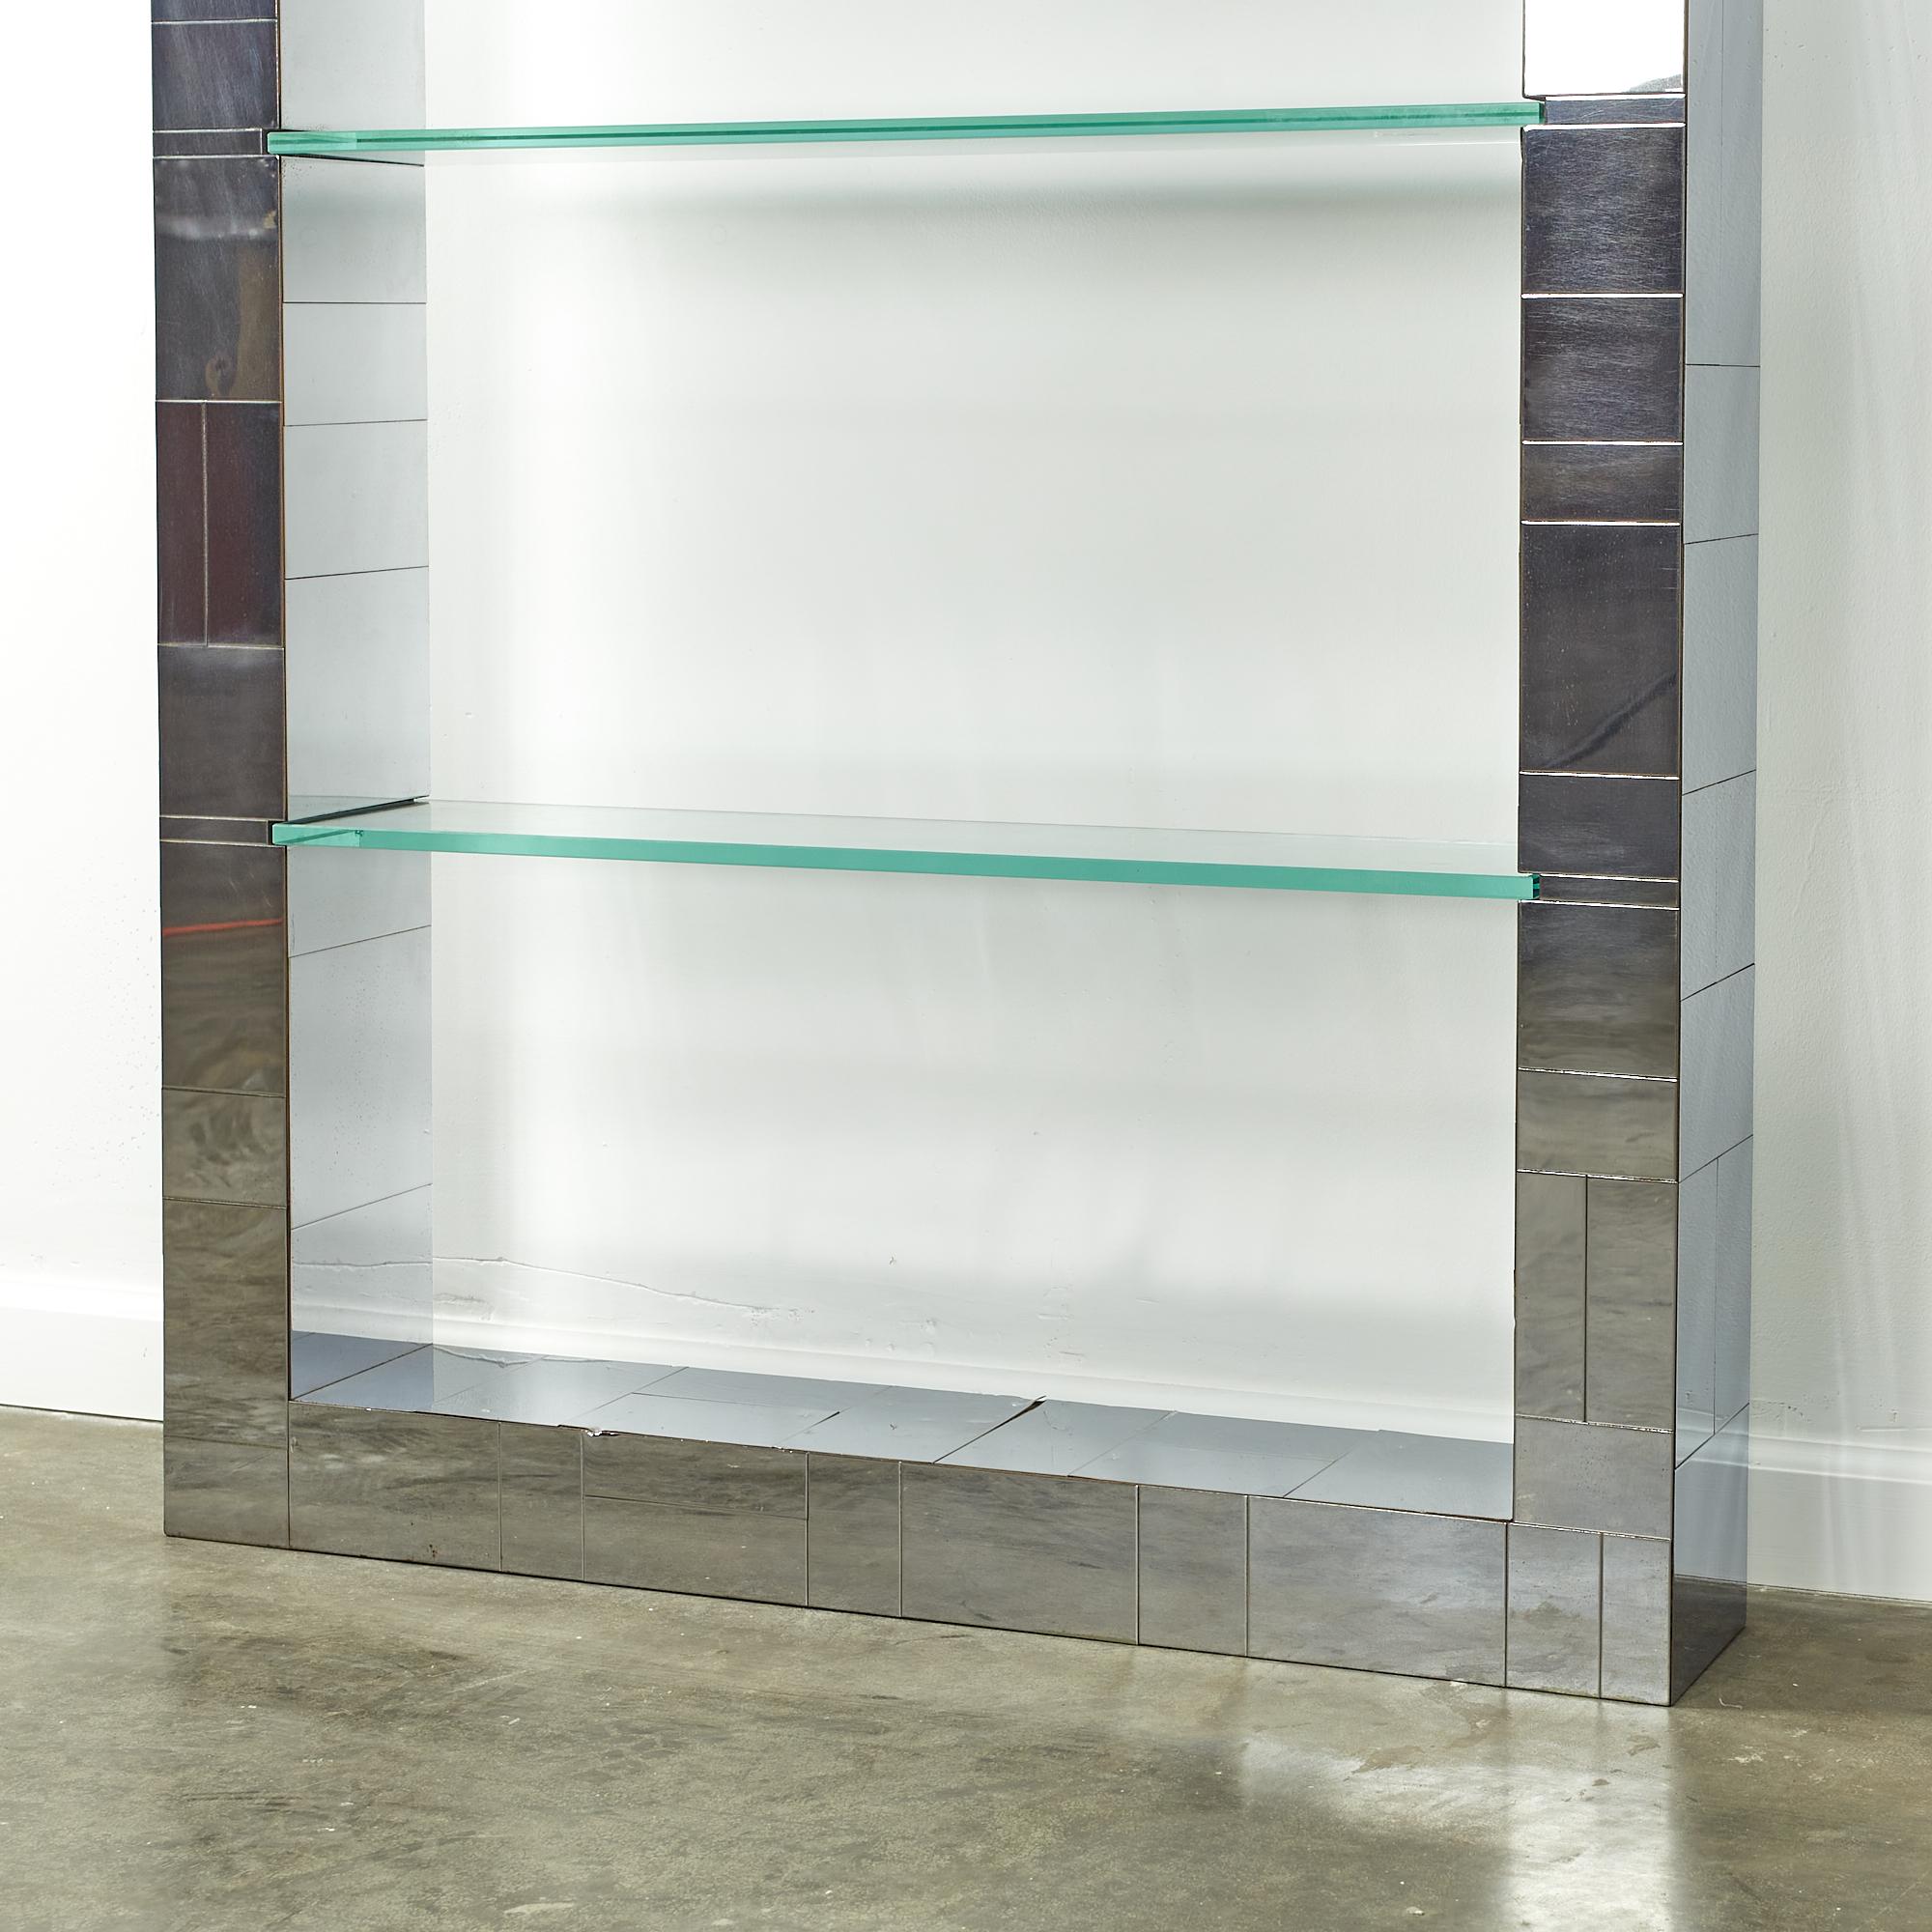 Glass Paul Evans Midcentury Chrome Cityscape Wall Shelf Bookshelf For Sale